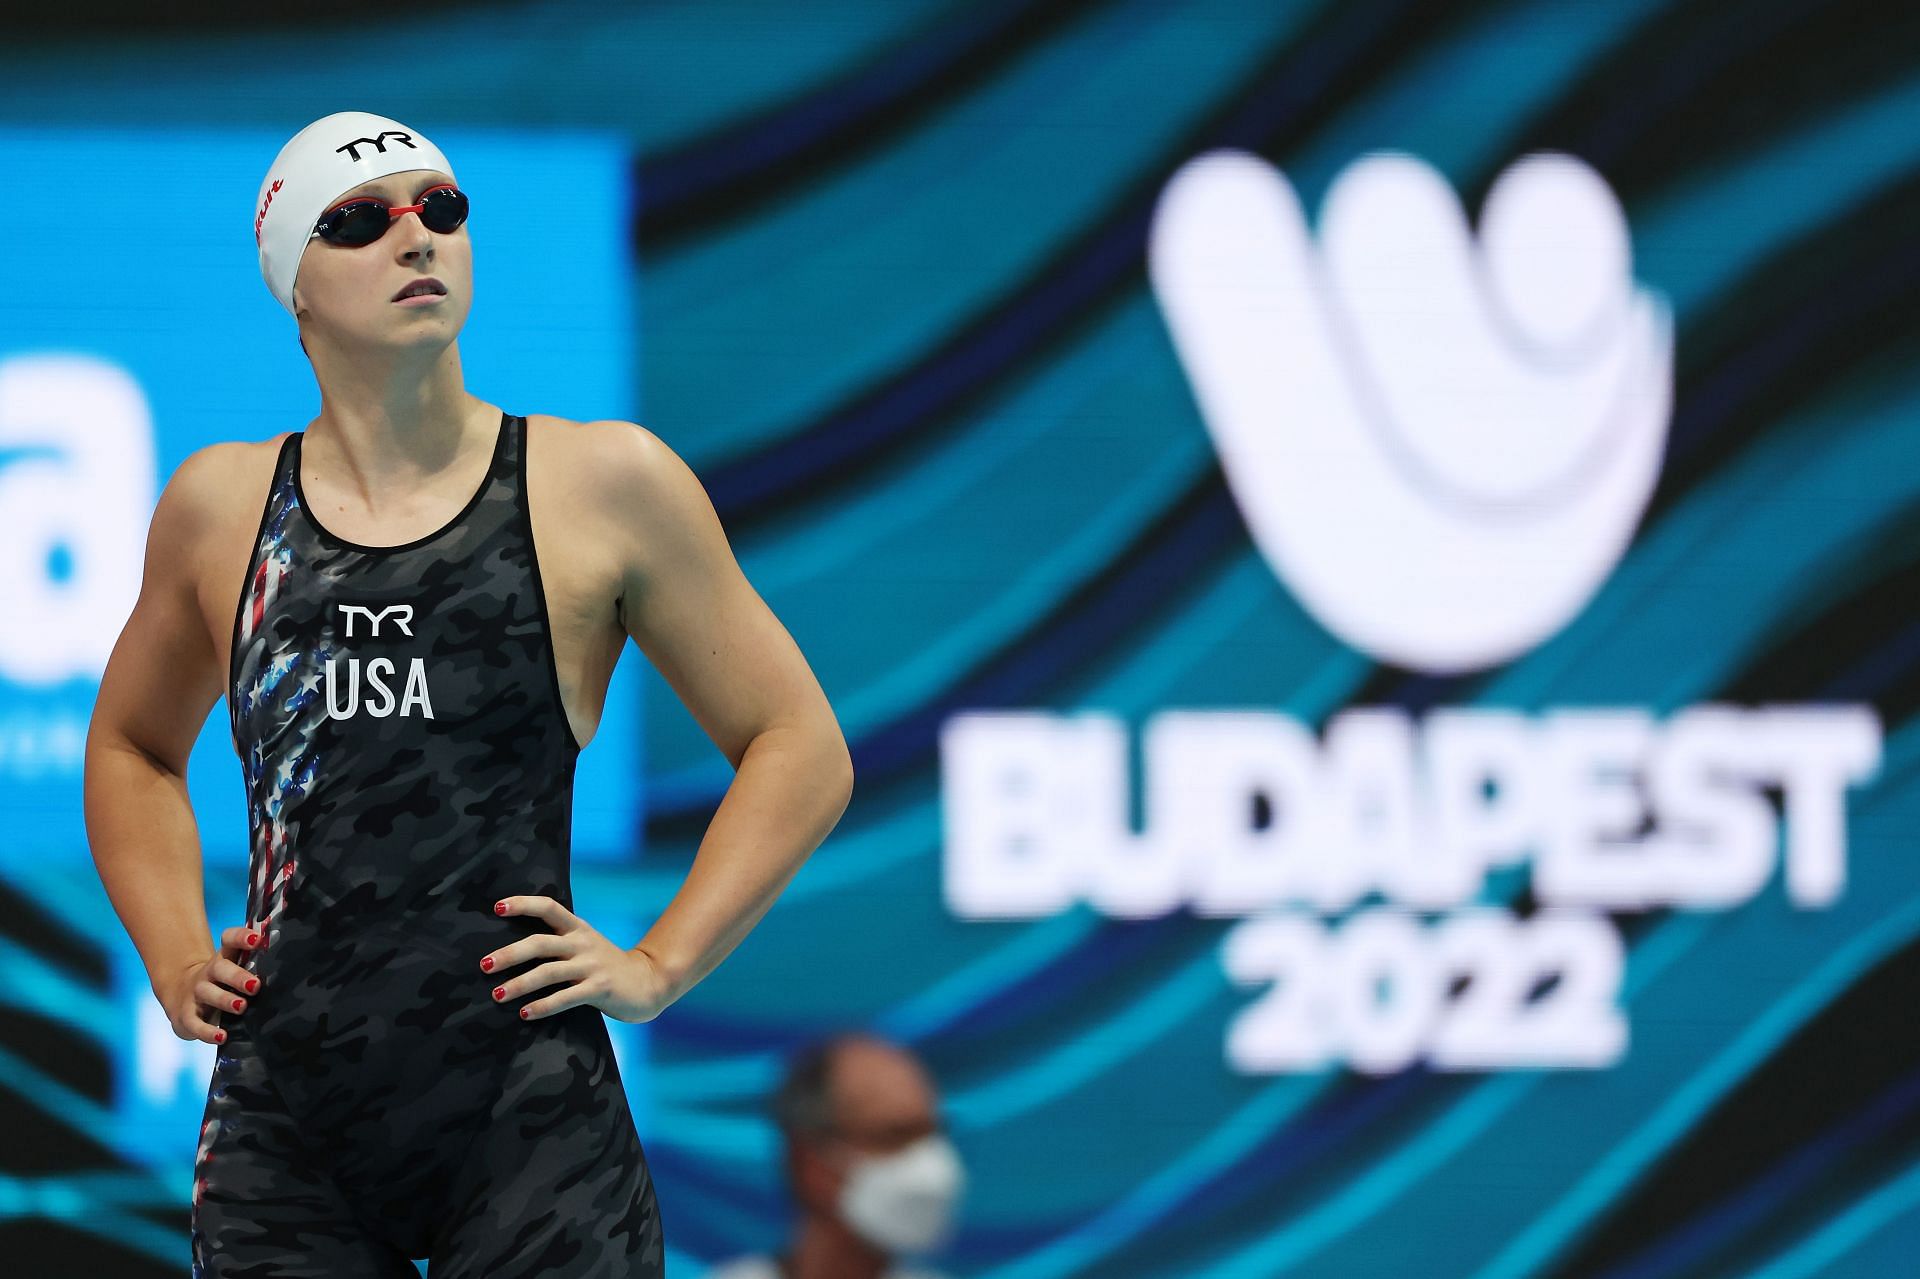 Budapest 2022 FINA World Championships: Swimming - Day 1